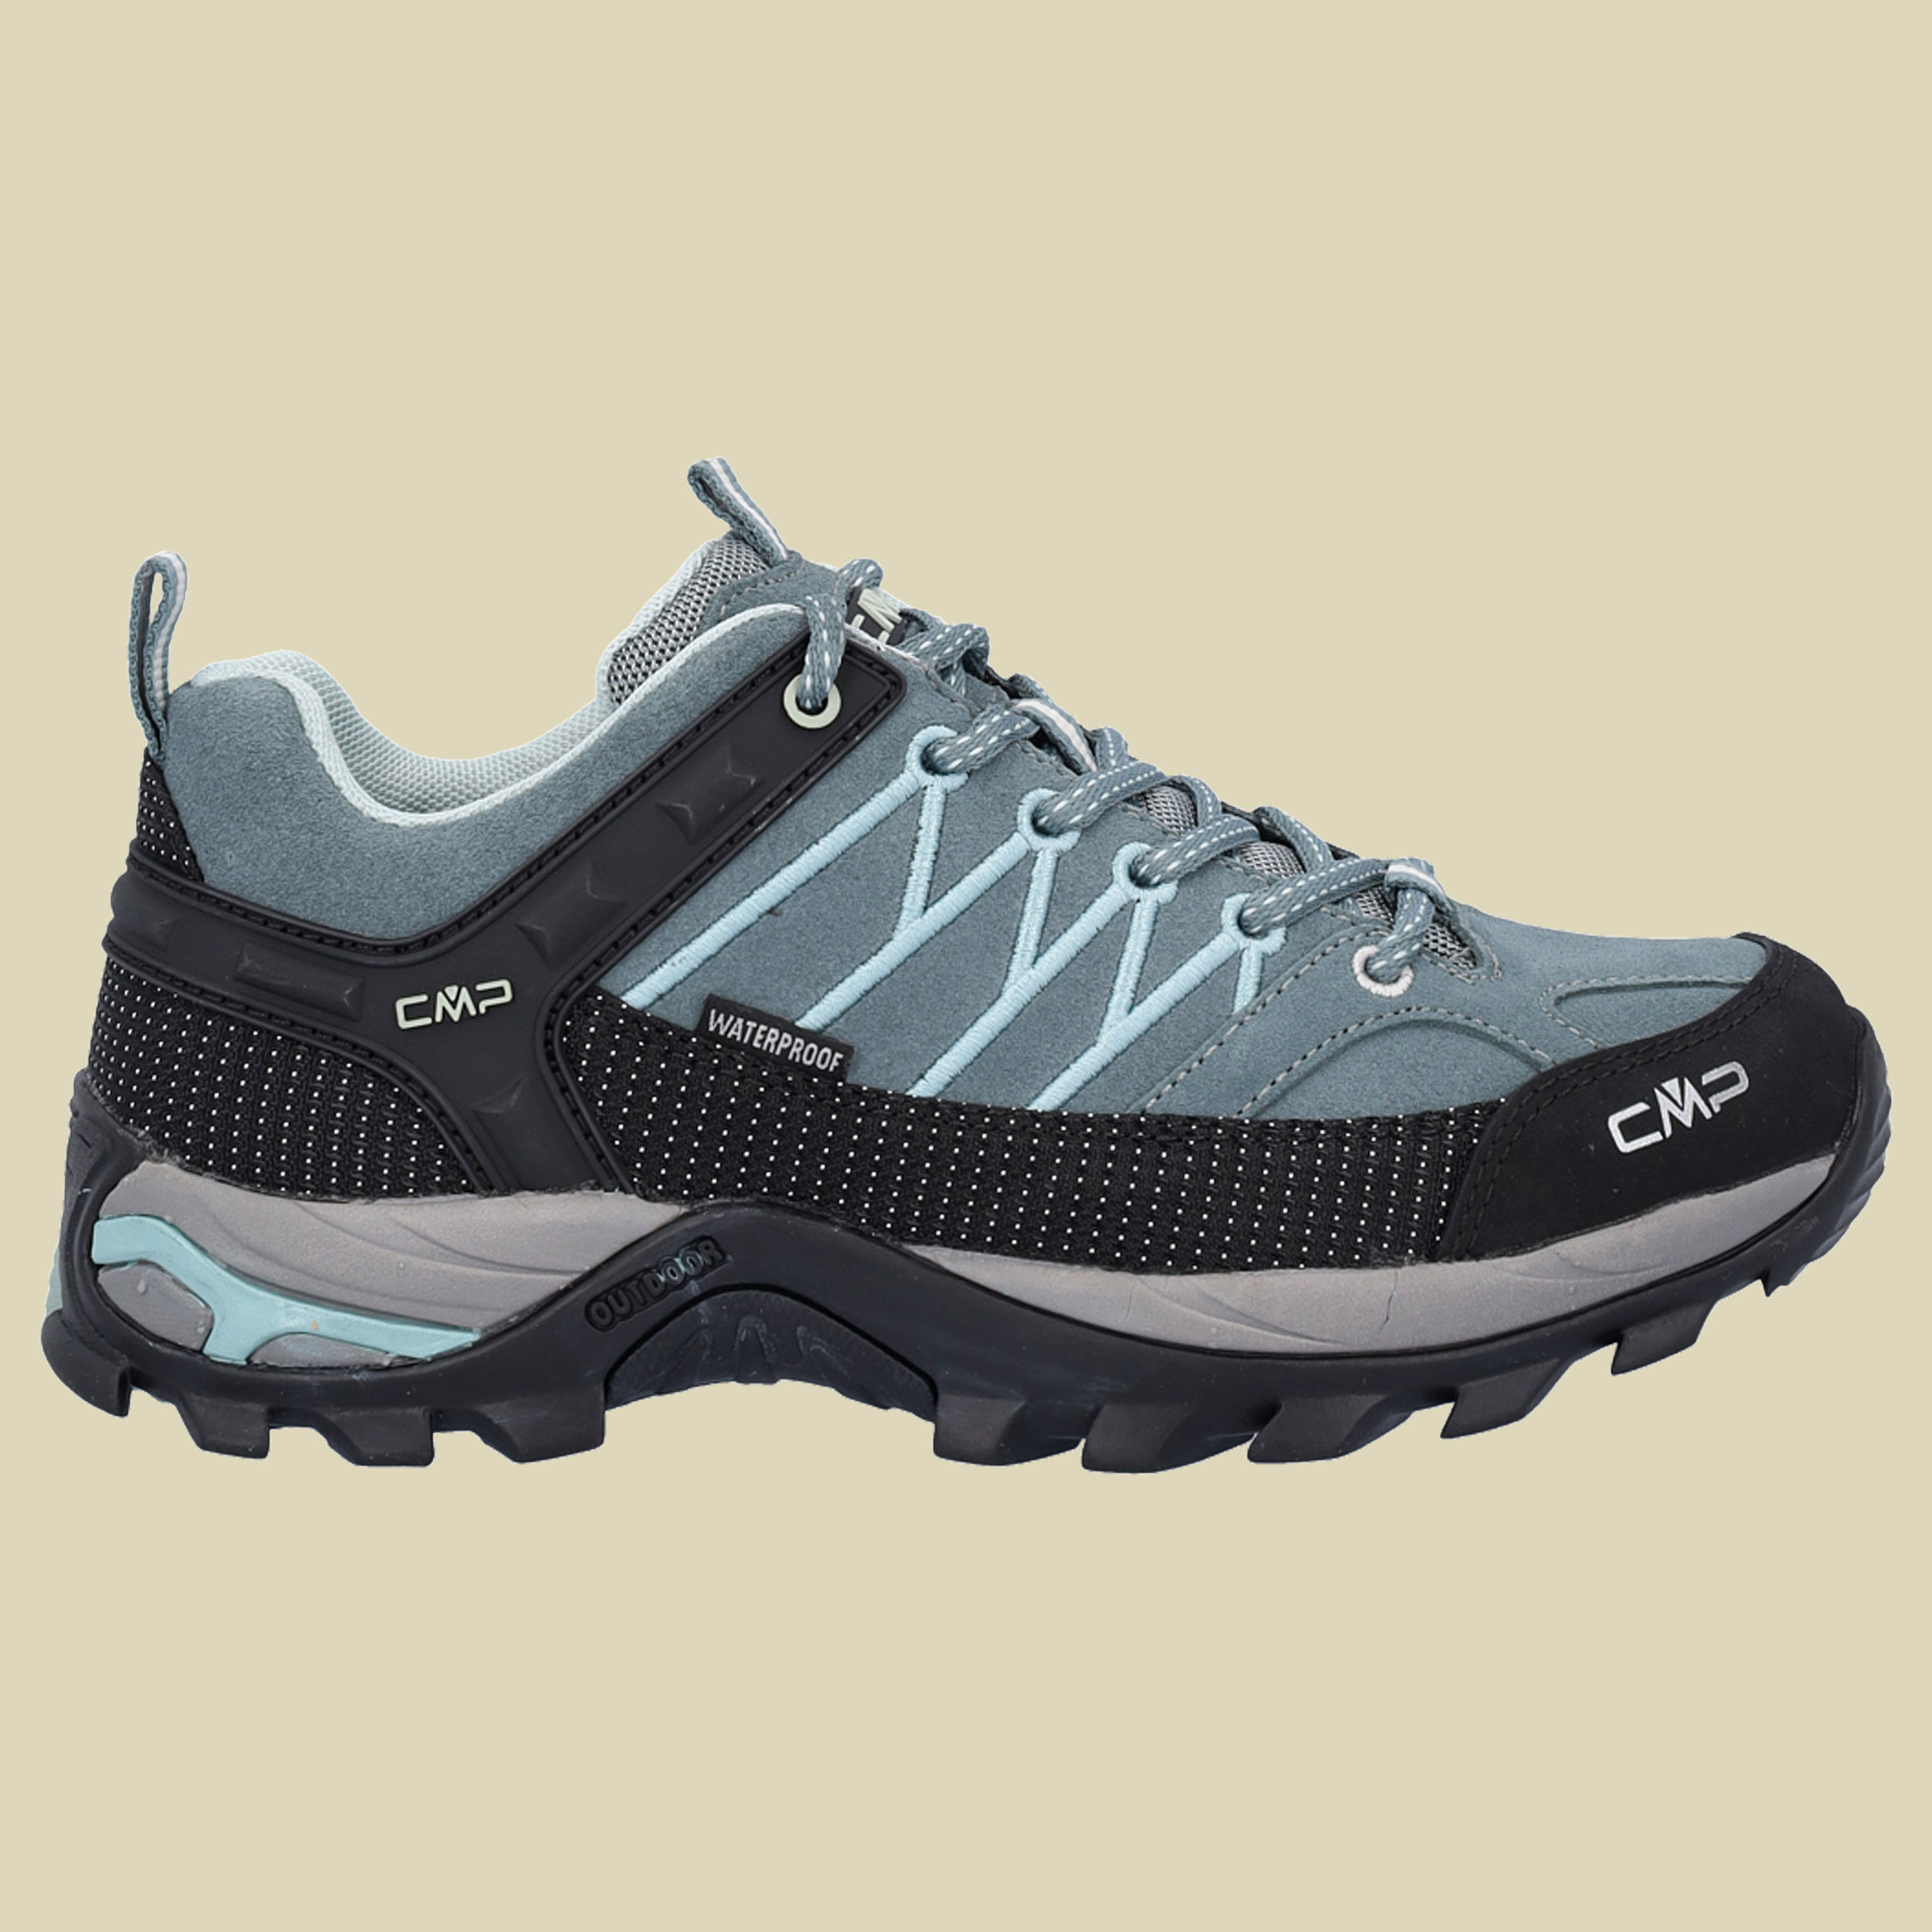 CMP Rigel Low WMN Trekking Shoes WP Women Größe 37 Farbe E111 mineral green